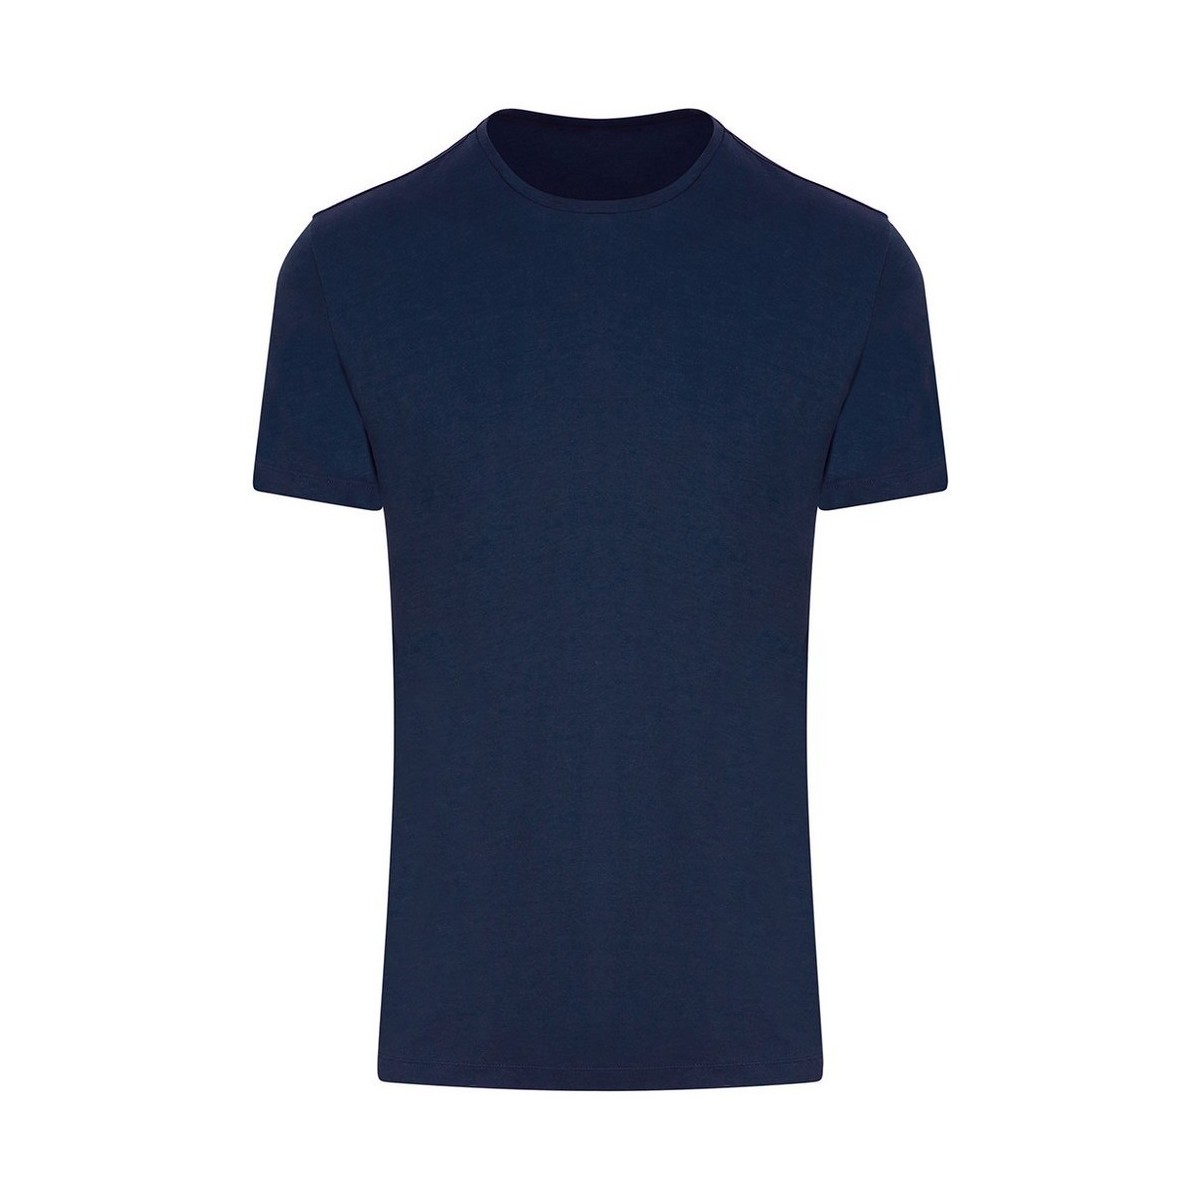 Vêtements Air Jordan 6 Hare Matching T-Shirts Awdis Urban Bleu